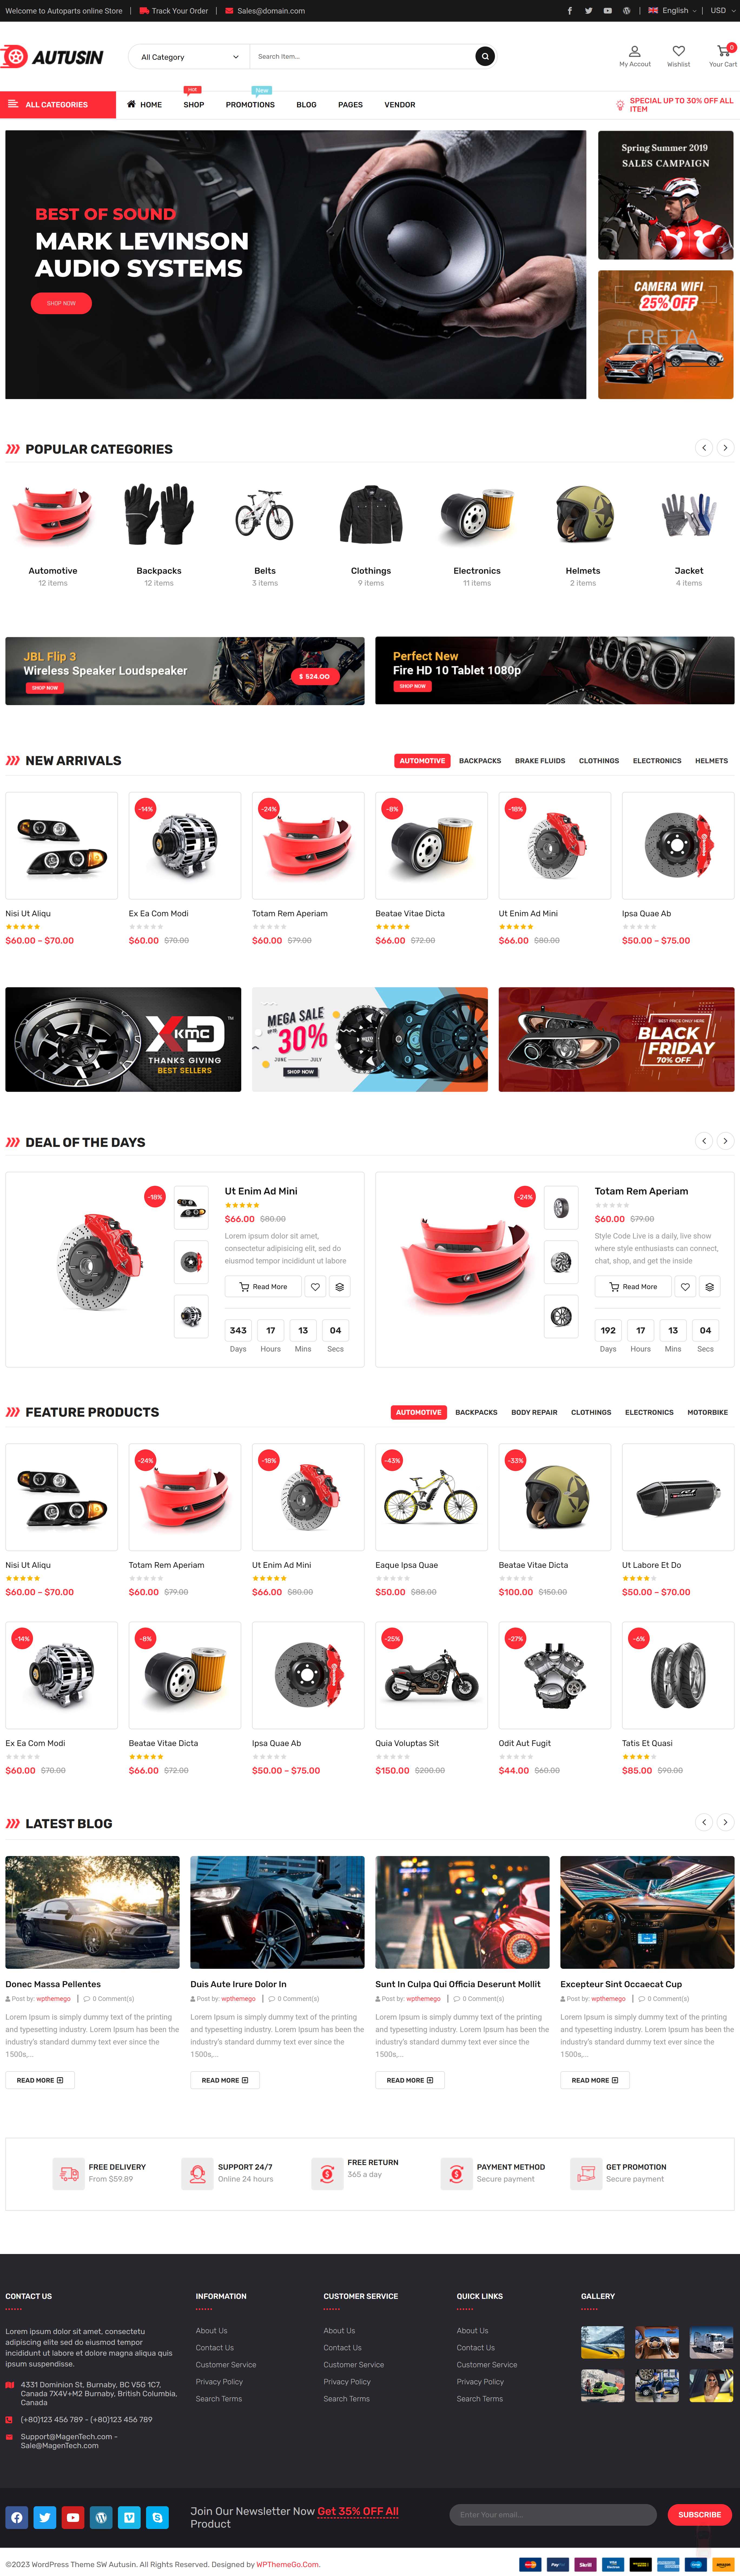 Mẫu thiết kế website showroom bán Phụ tùng, đồ chơi ô tô, xe máy đẹp 01 demo_wpthemego_com/themes/sw_autusin/demo7/home-page-19/